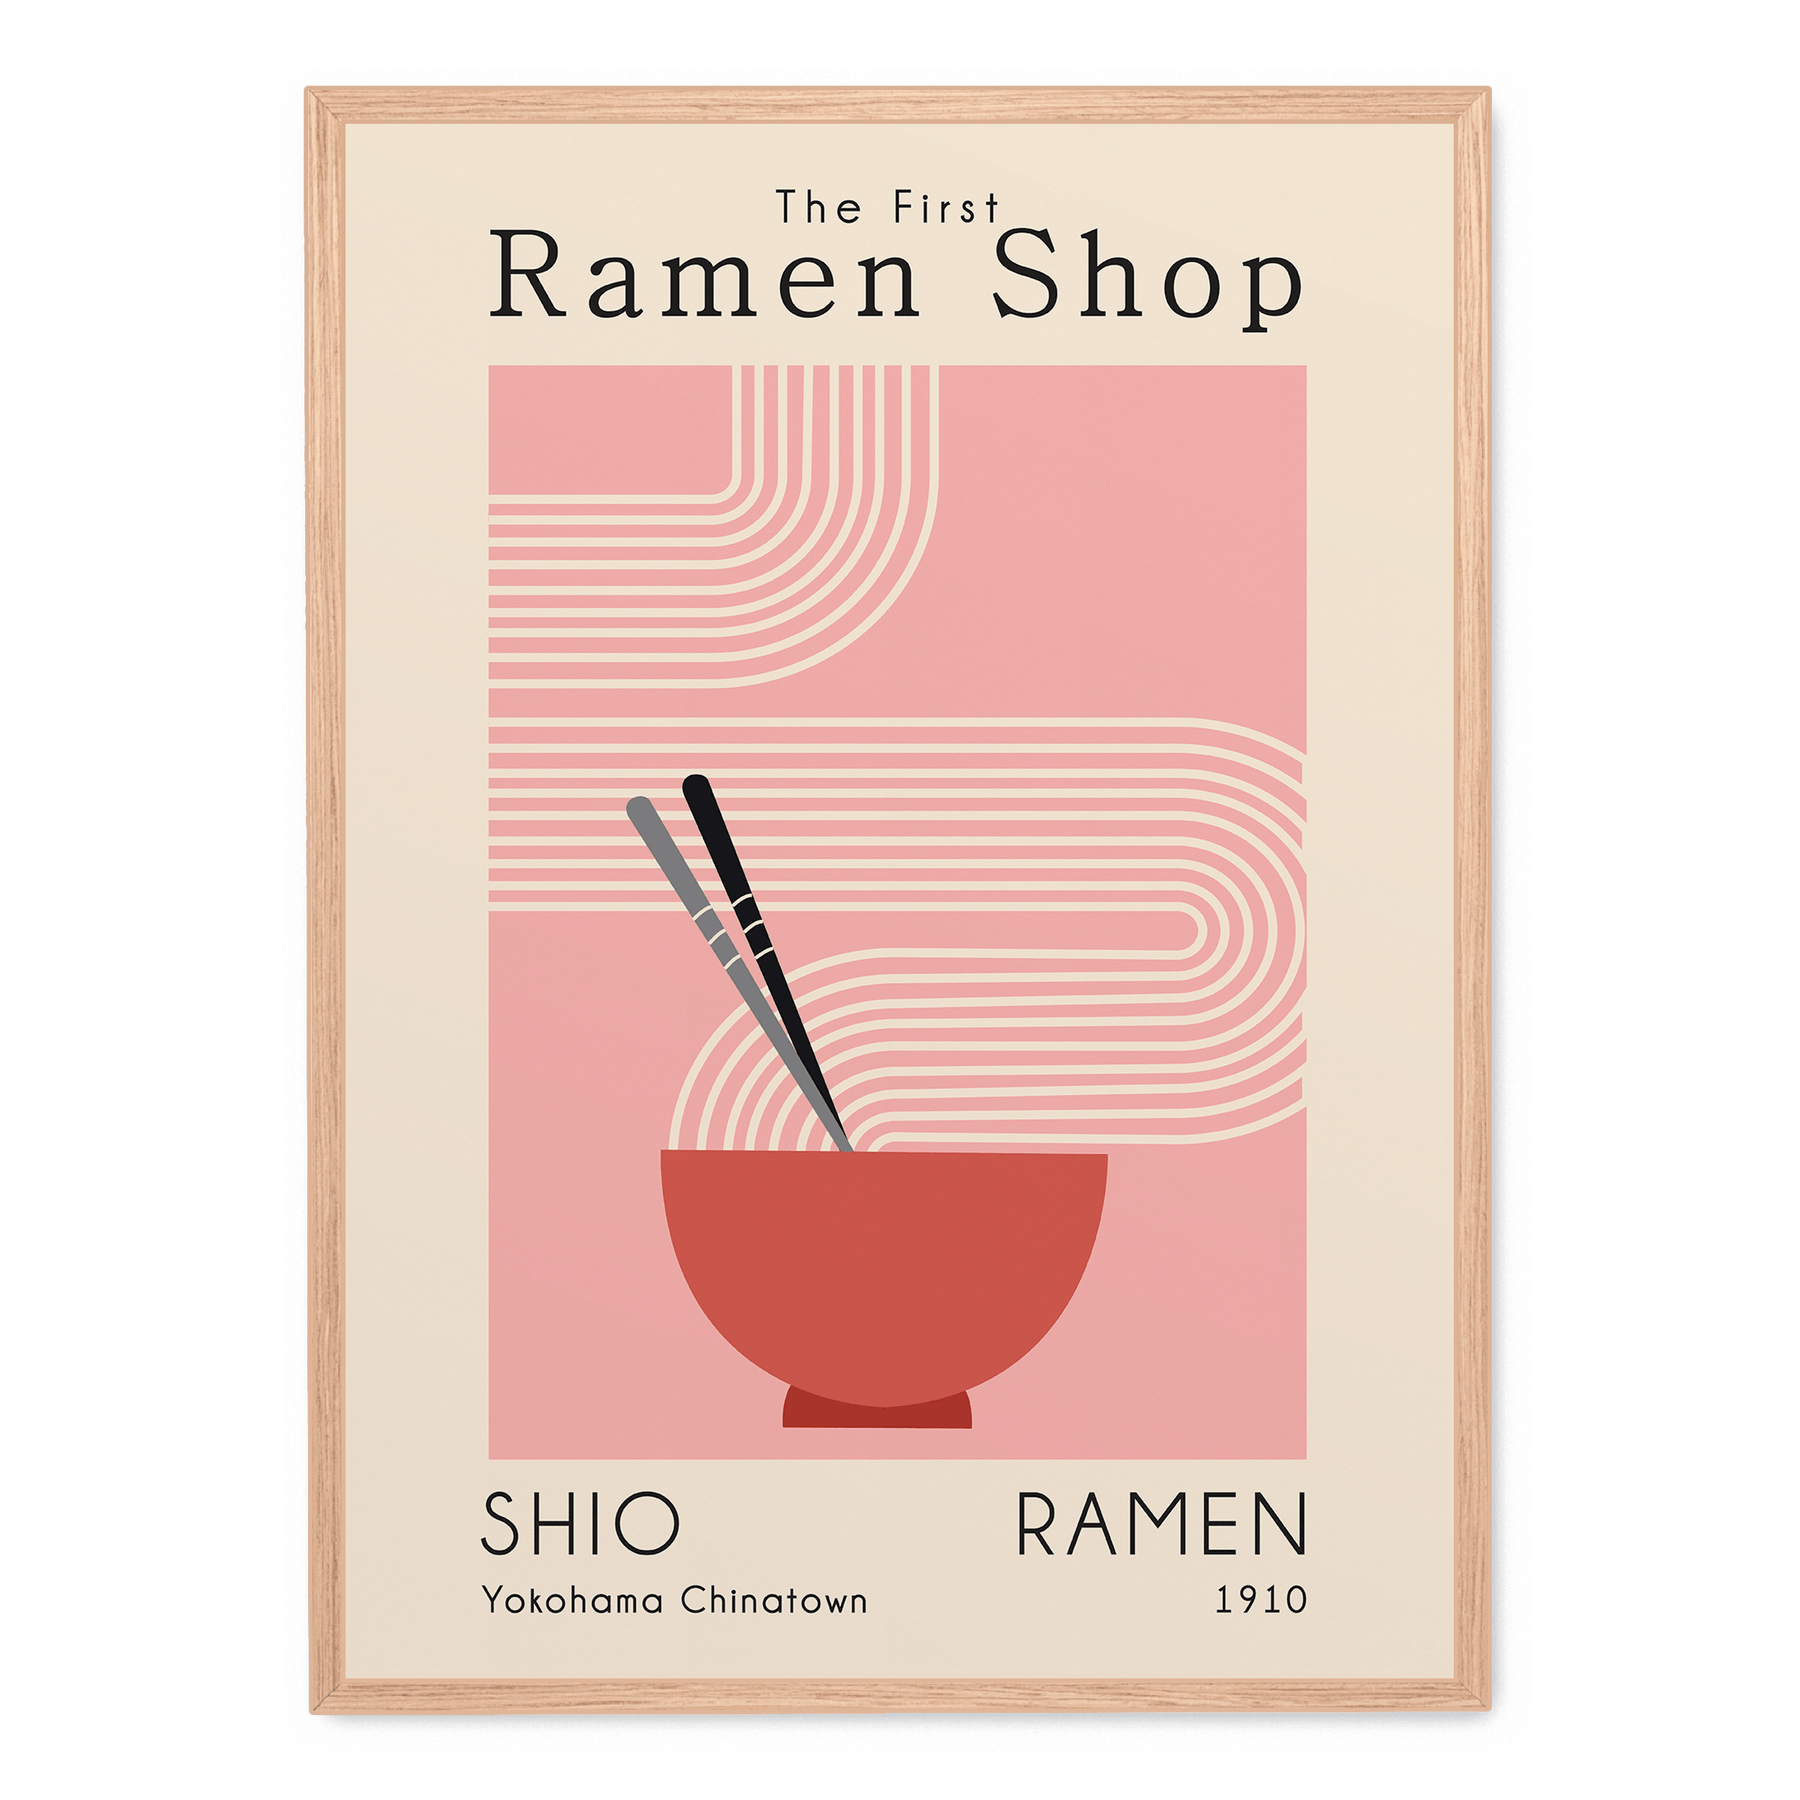 The First Ramen Shop poster